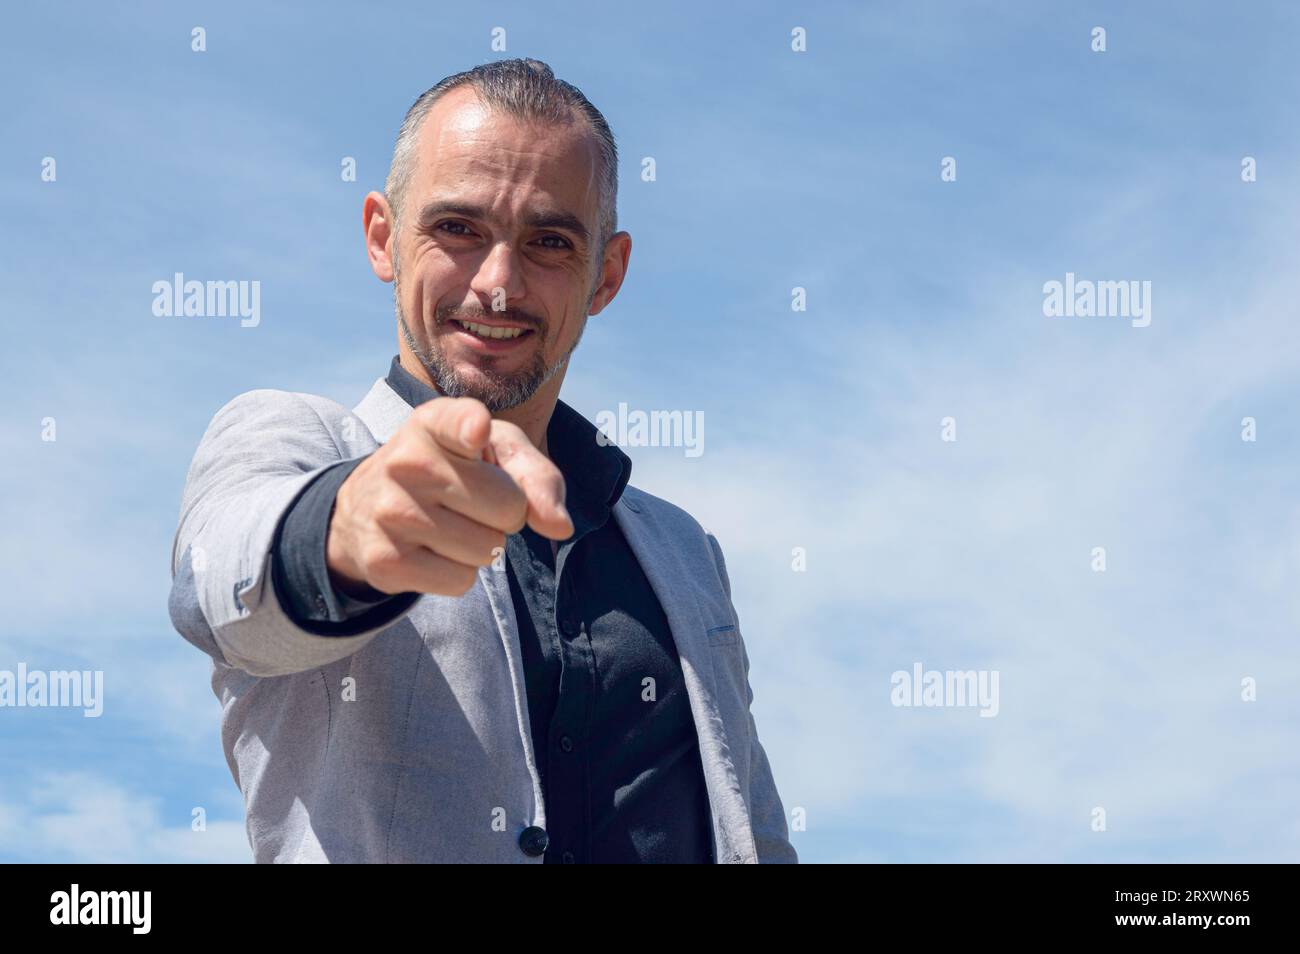 Homme d'affaires caucasien français avec barbe et vêtements d'affaires, debout à l'extérieur, heureux souriant pointant du doigt et regardant la caméra, backgro du ciel Banque D'Images